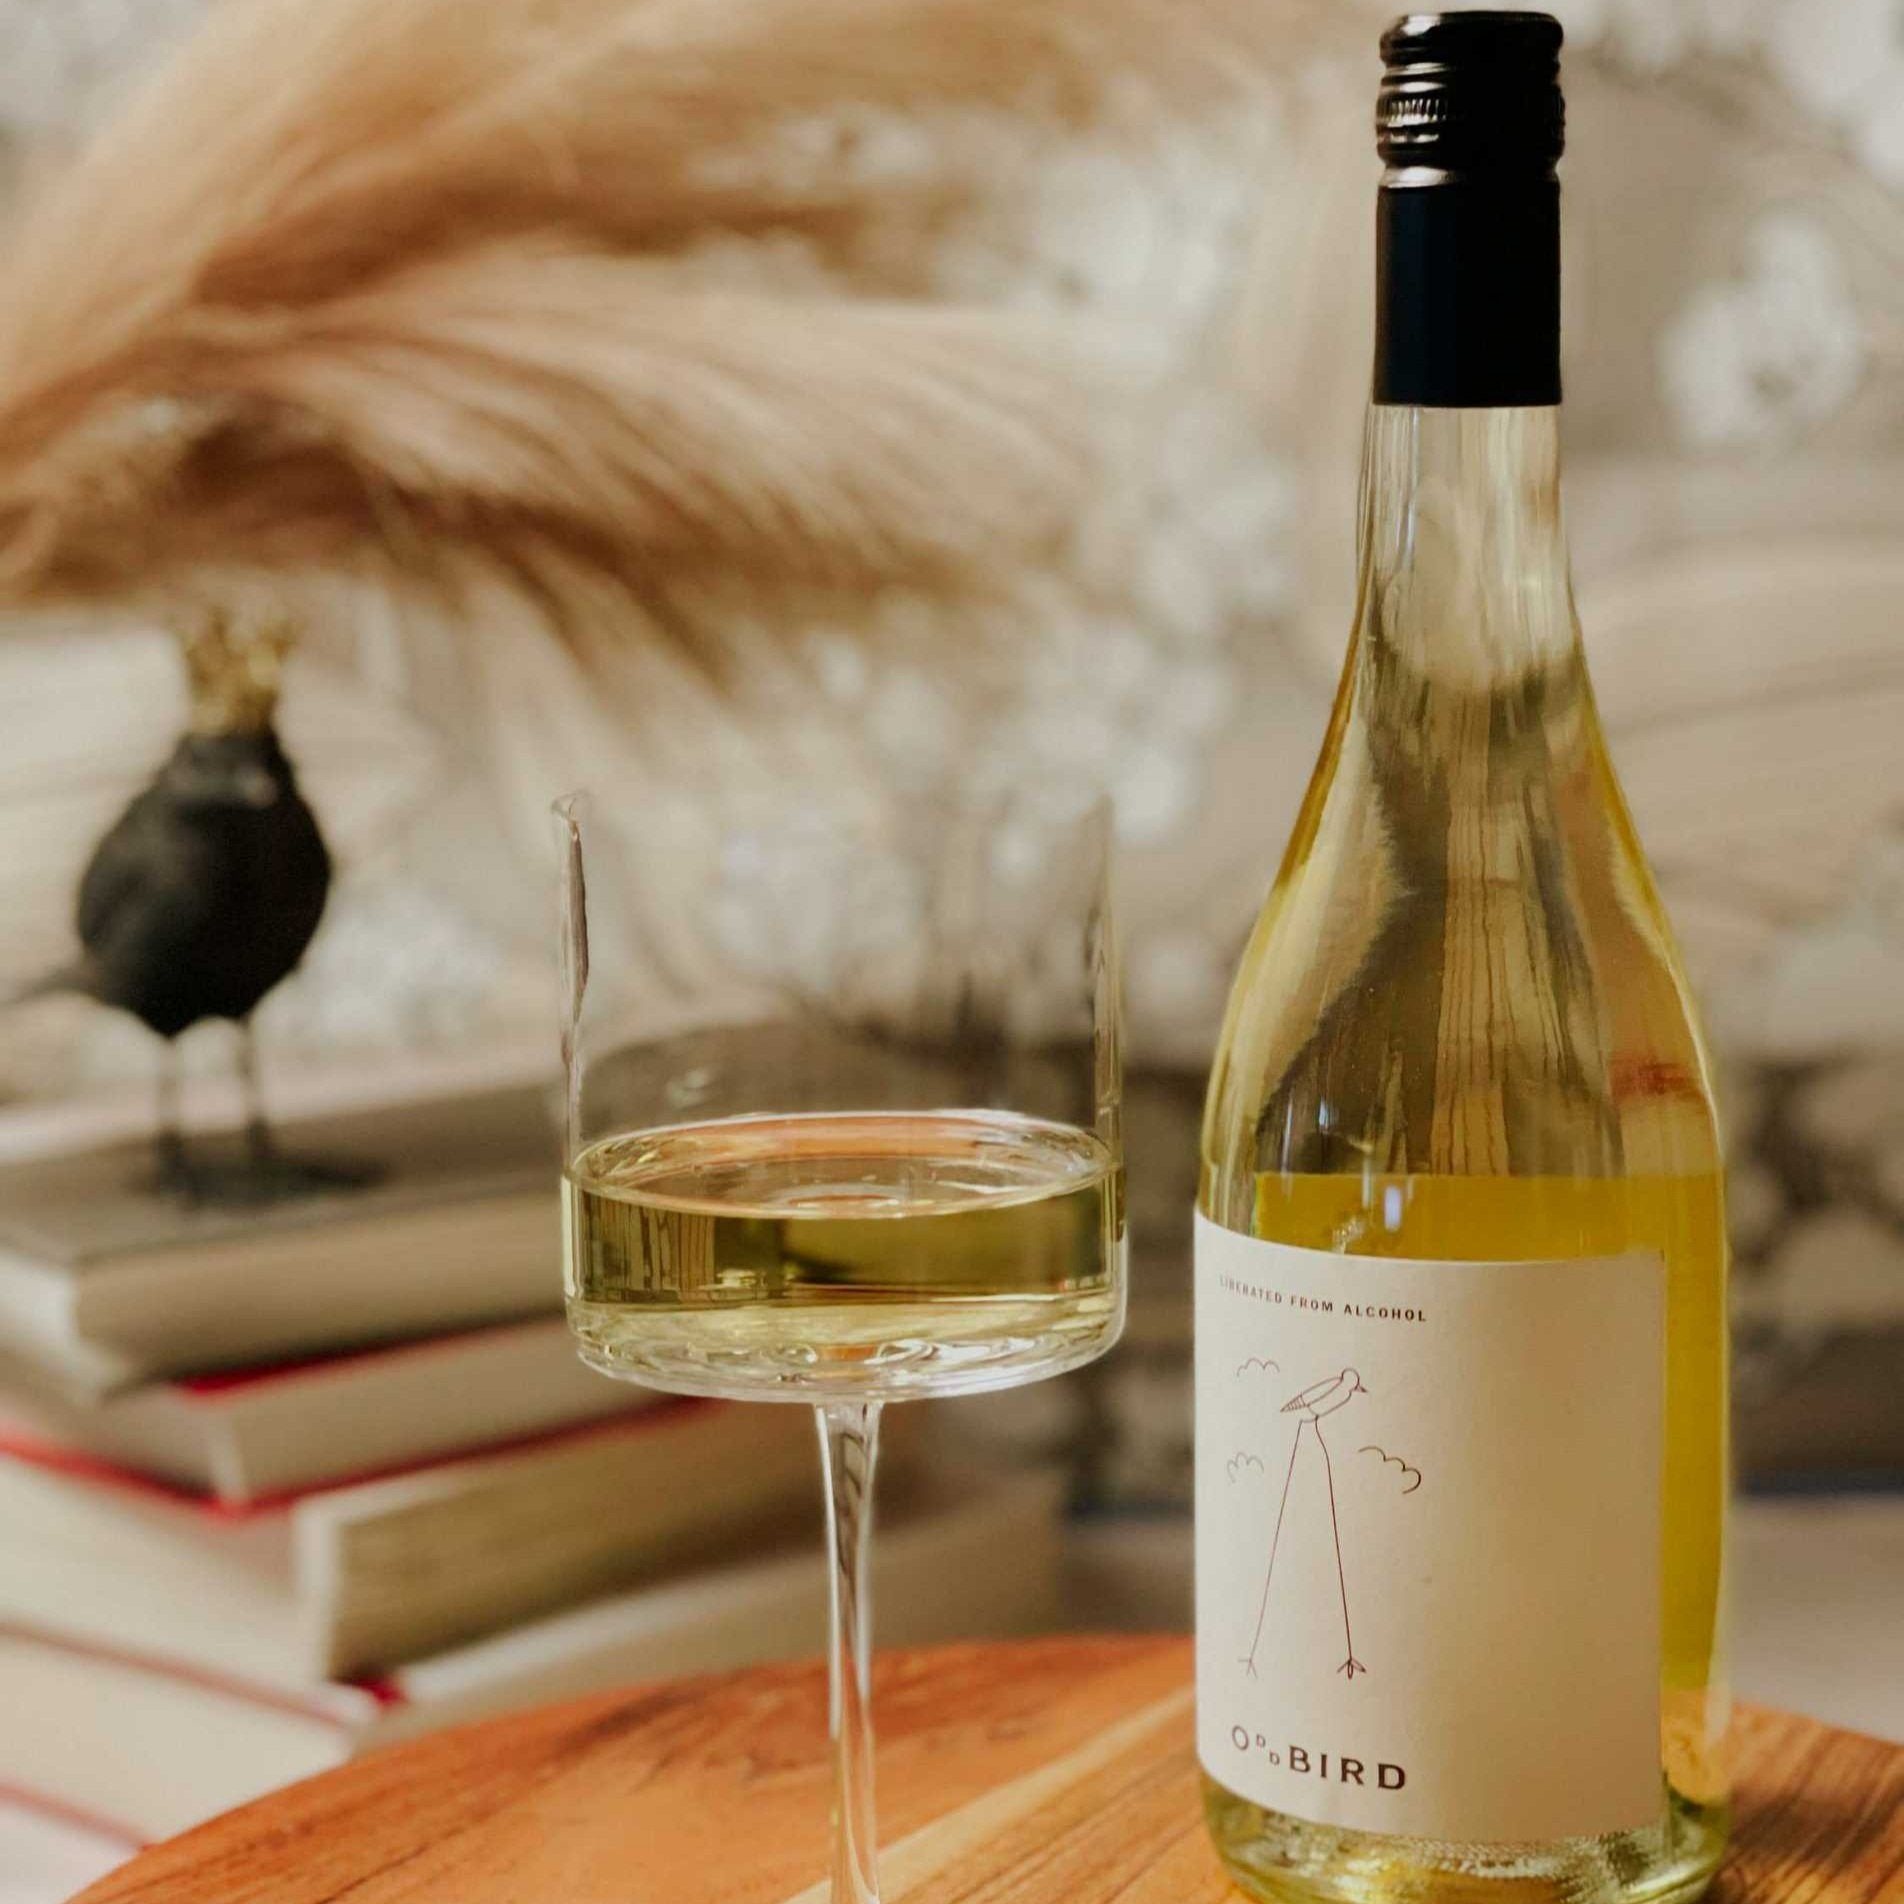 Oddbird Organic White wine